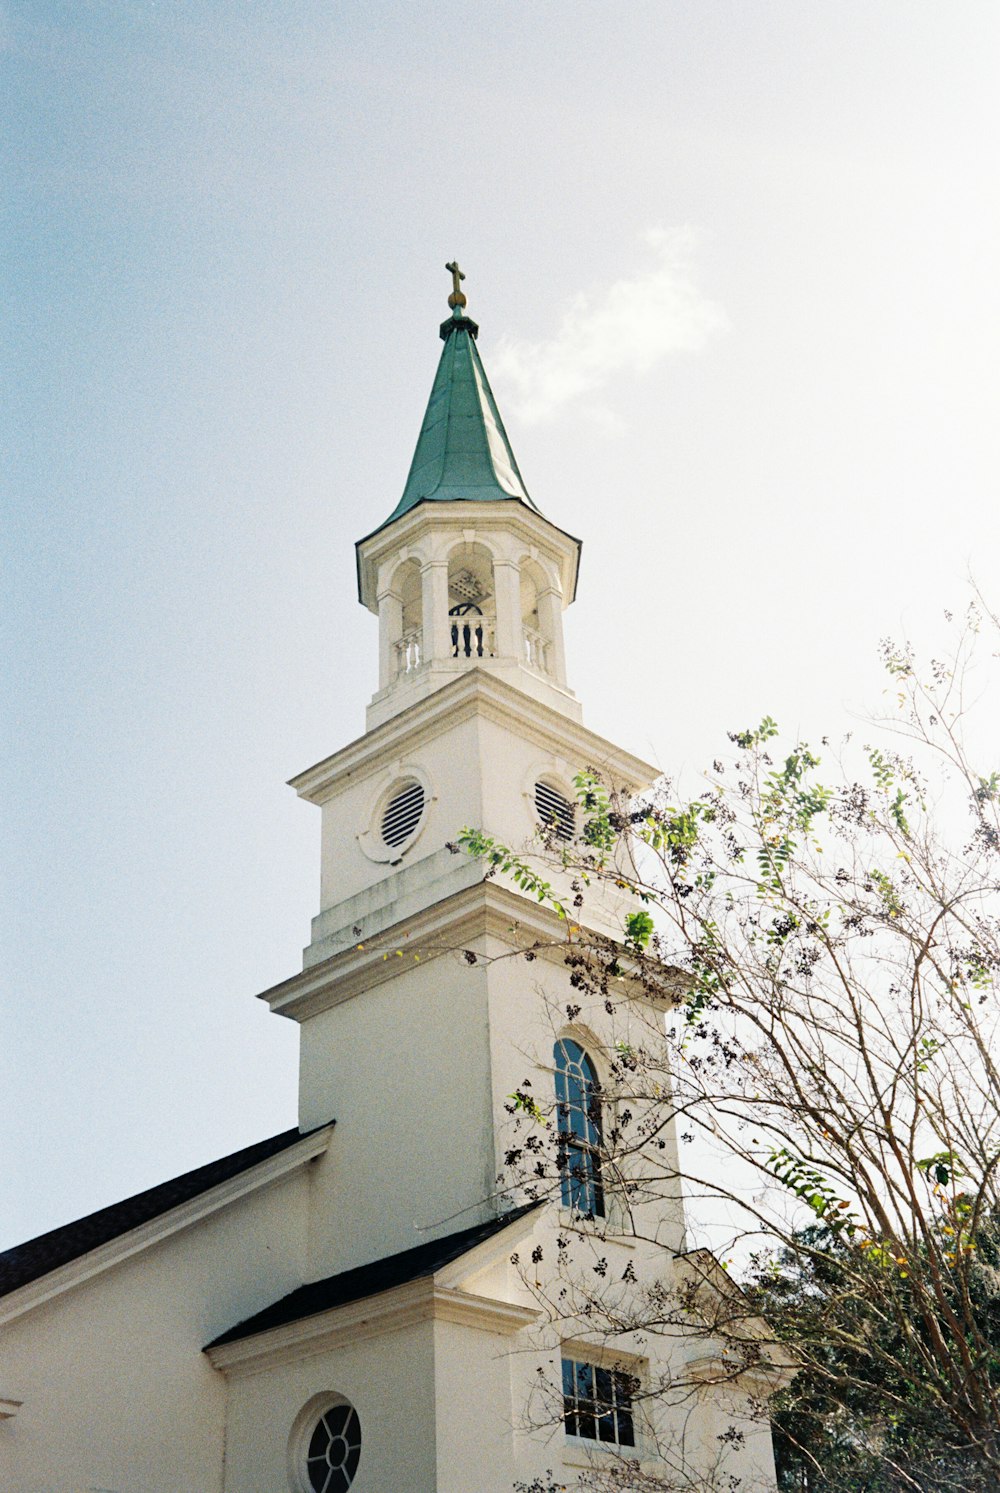 eine weiße Kirche mit einem grünen Kirchturm und einer Uhr